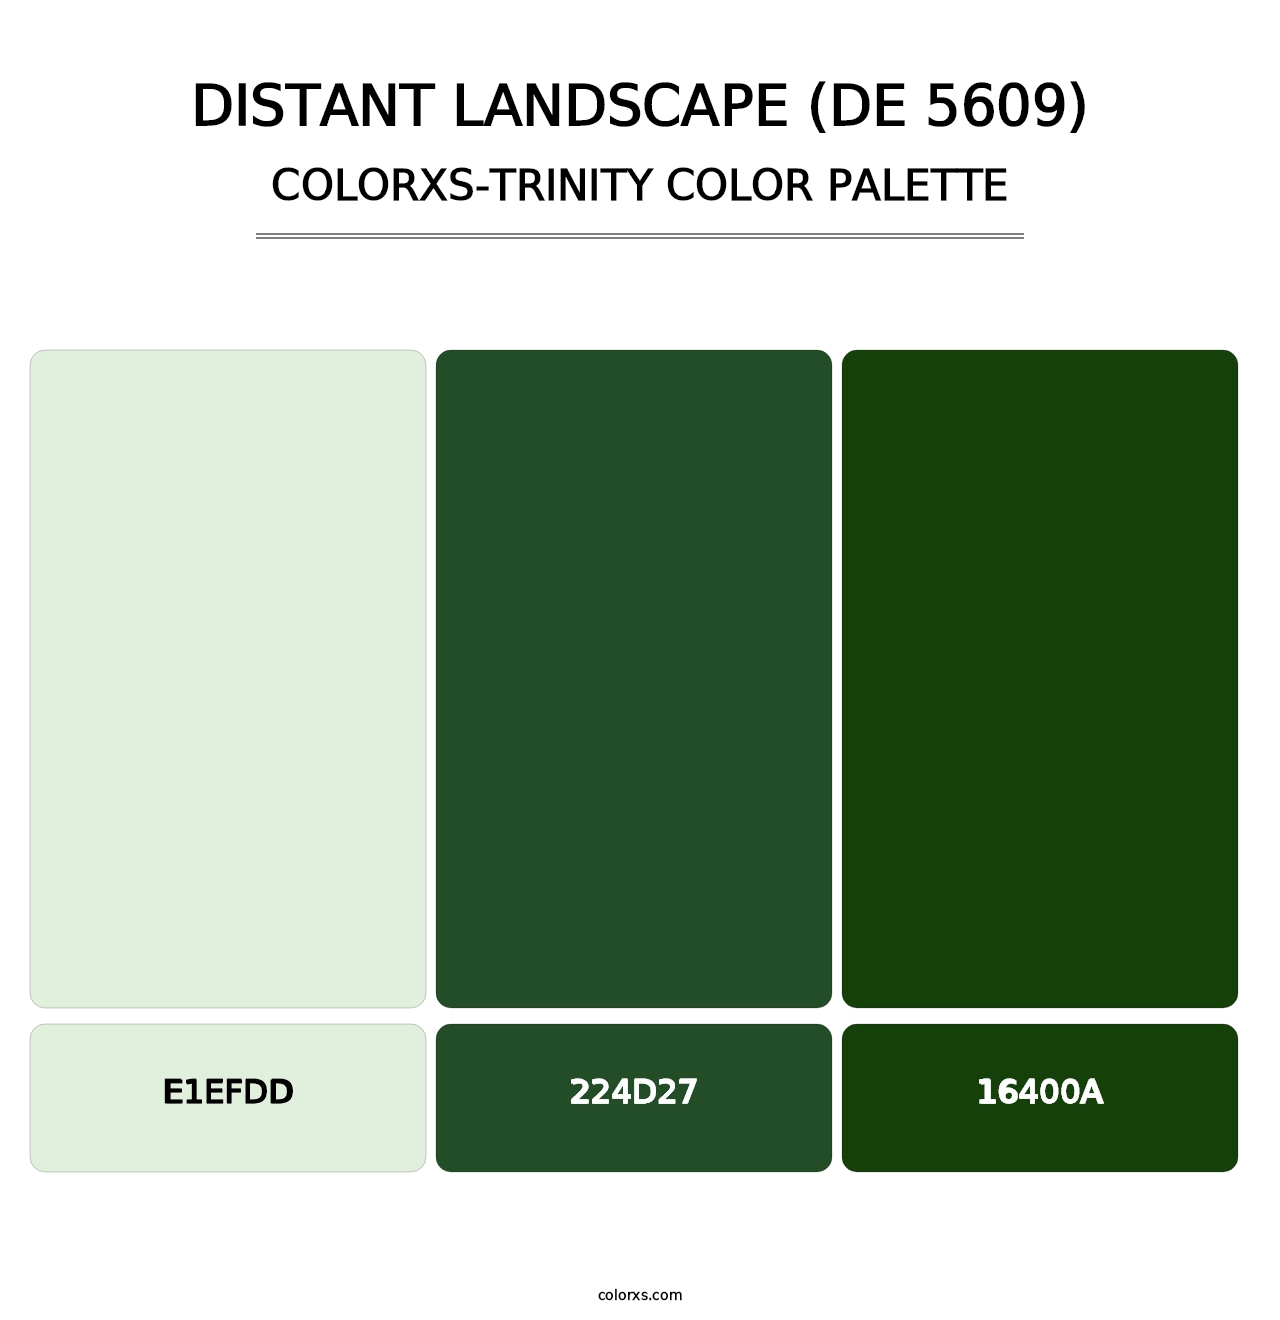 Distant Landscape (DE 5609) - Colorxs Trinity Palette